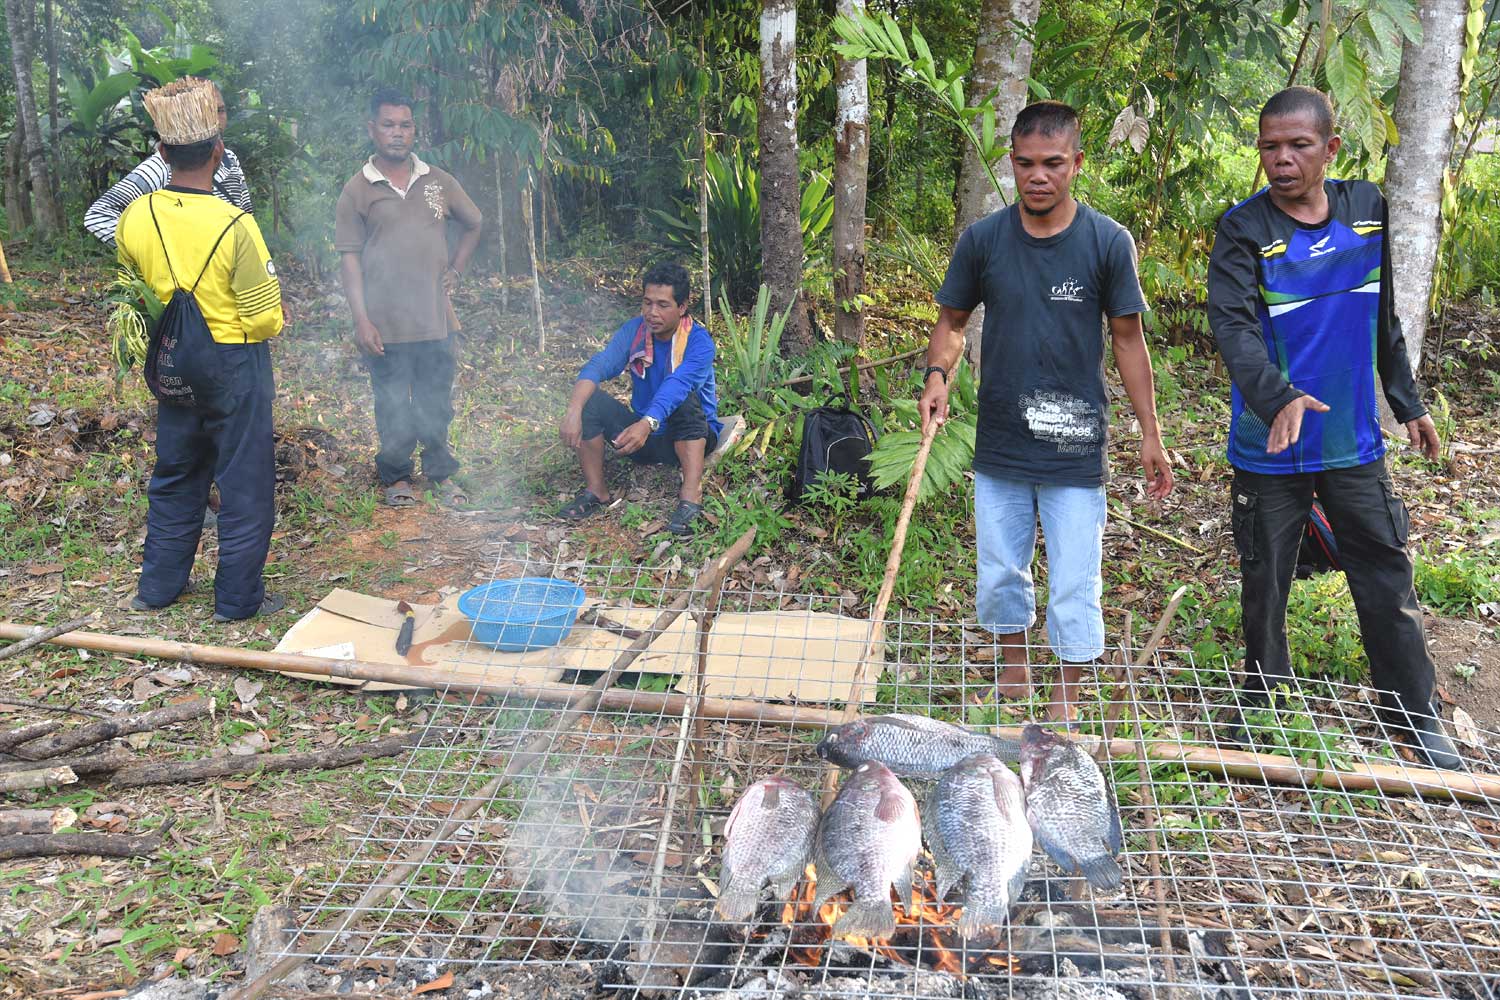 Orang Asli friends from Kg Sekam helping to prepare food